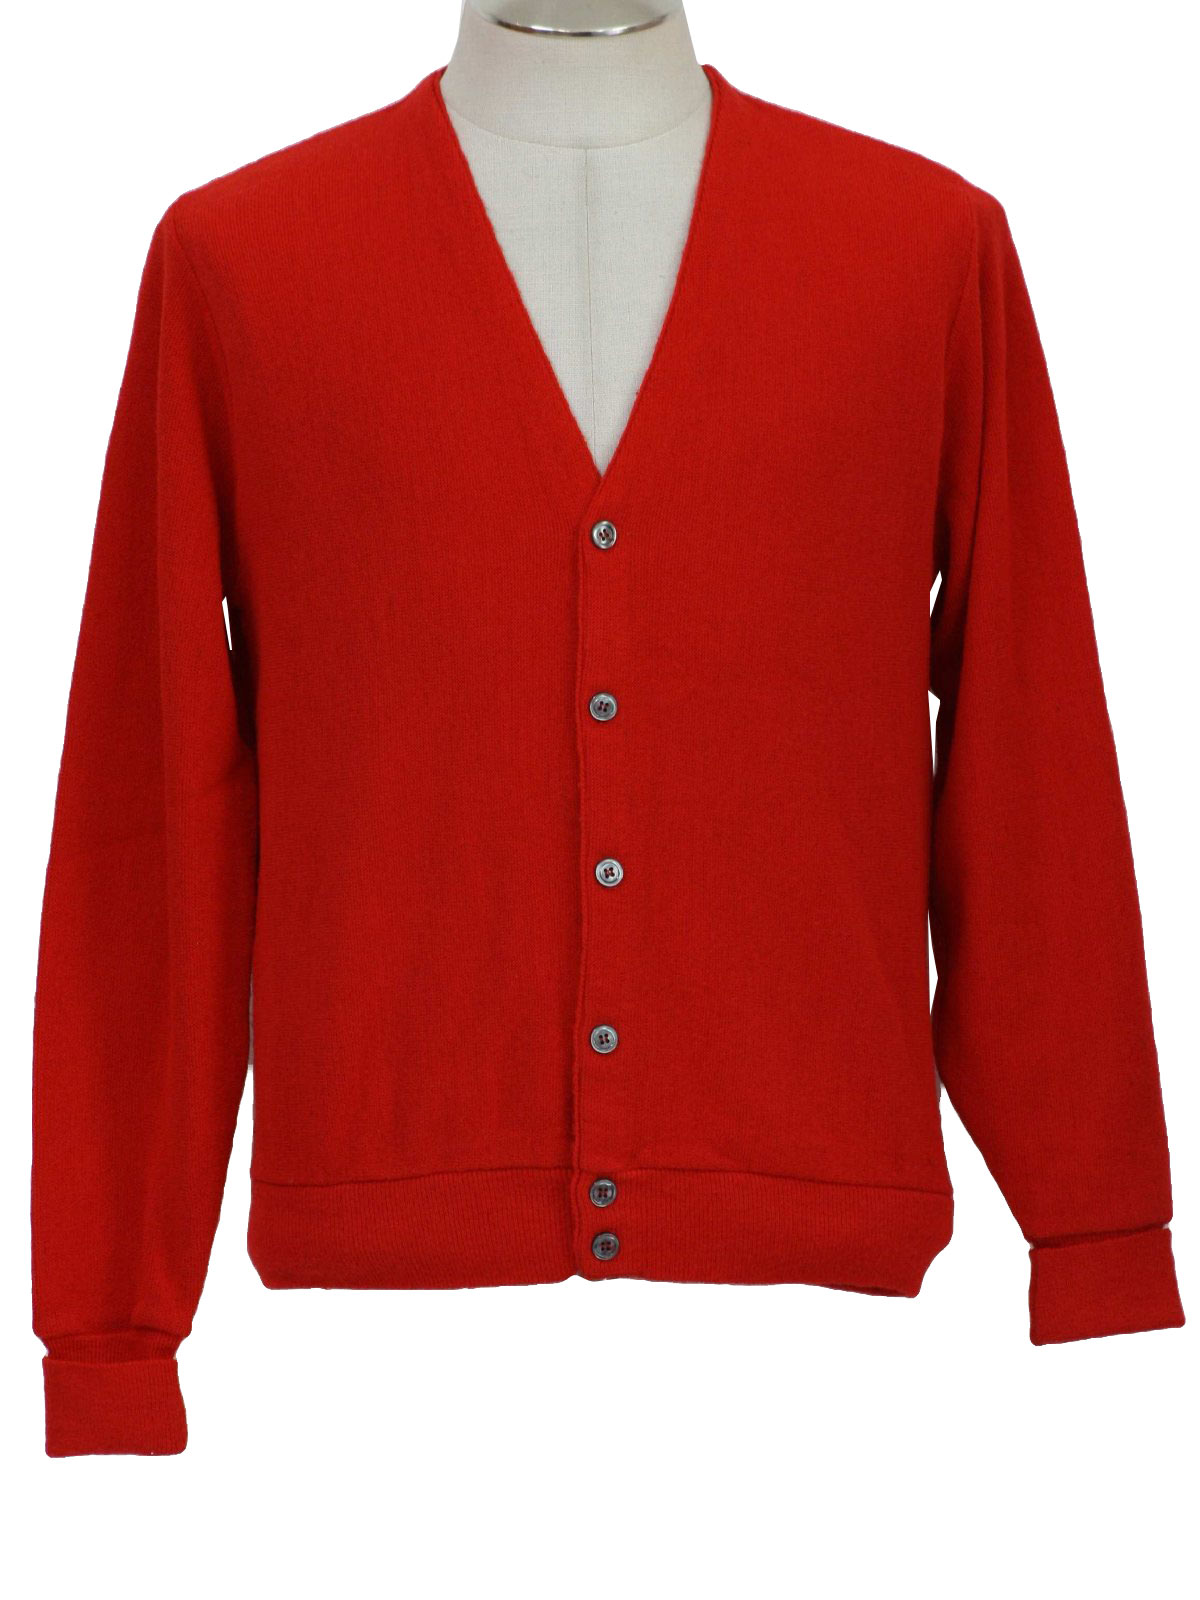 Retro 70's Caridgan Sweater: 70s -Pinnacle- Mens red acrylic longsleeve ...